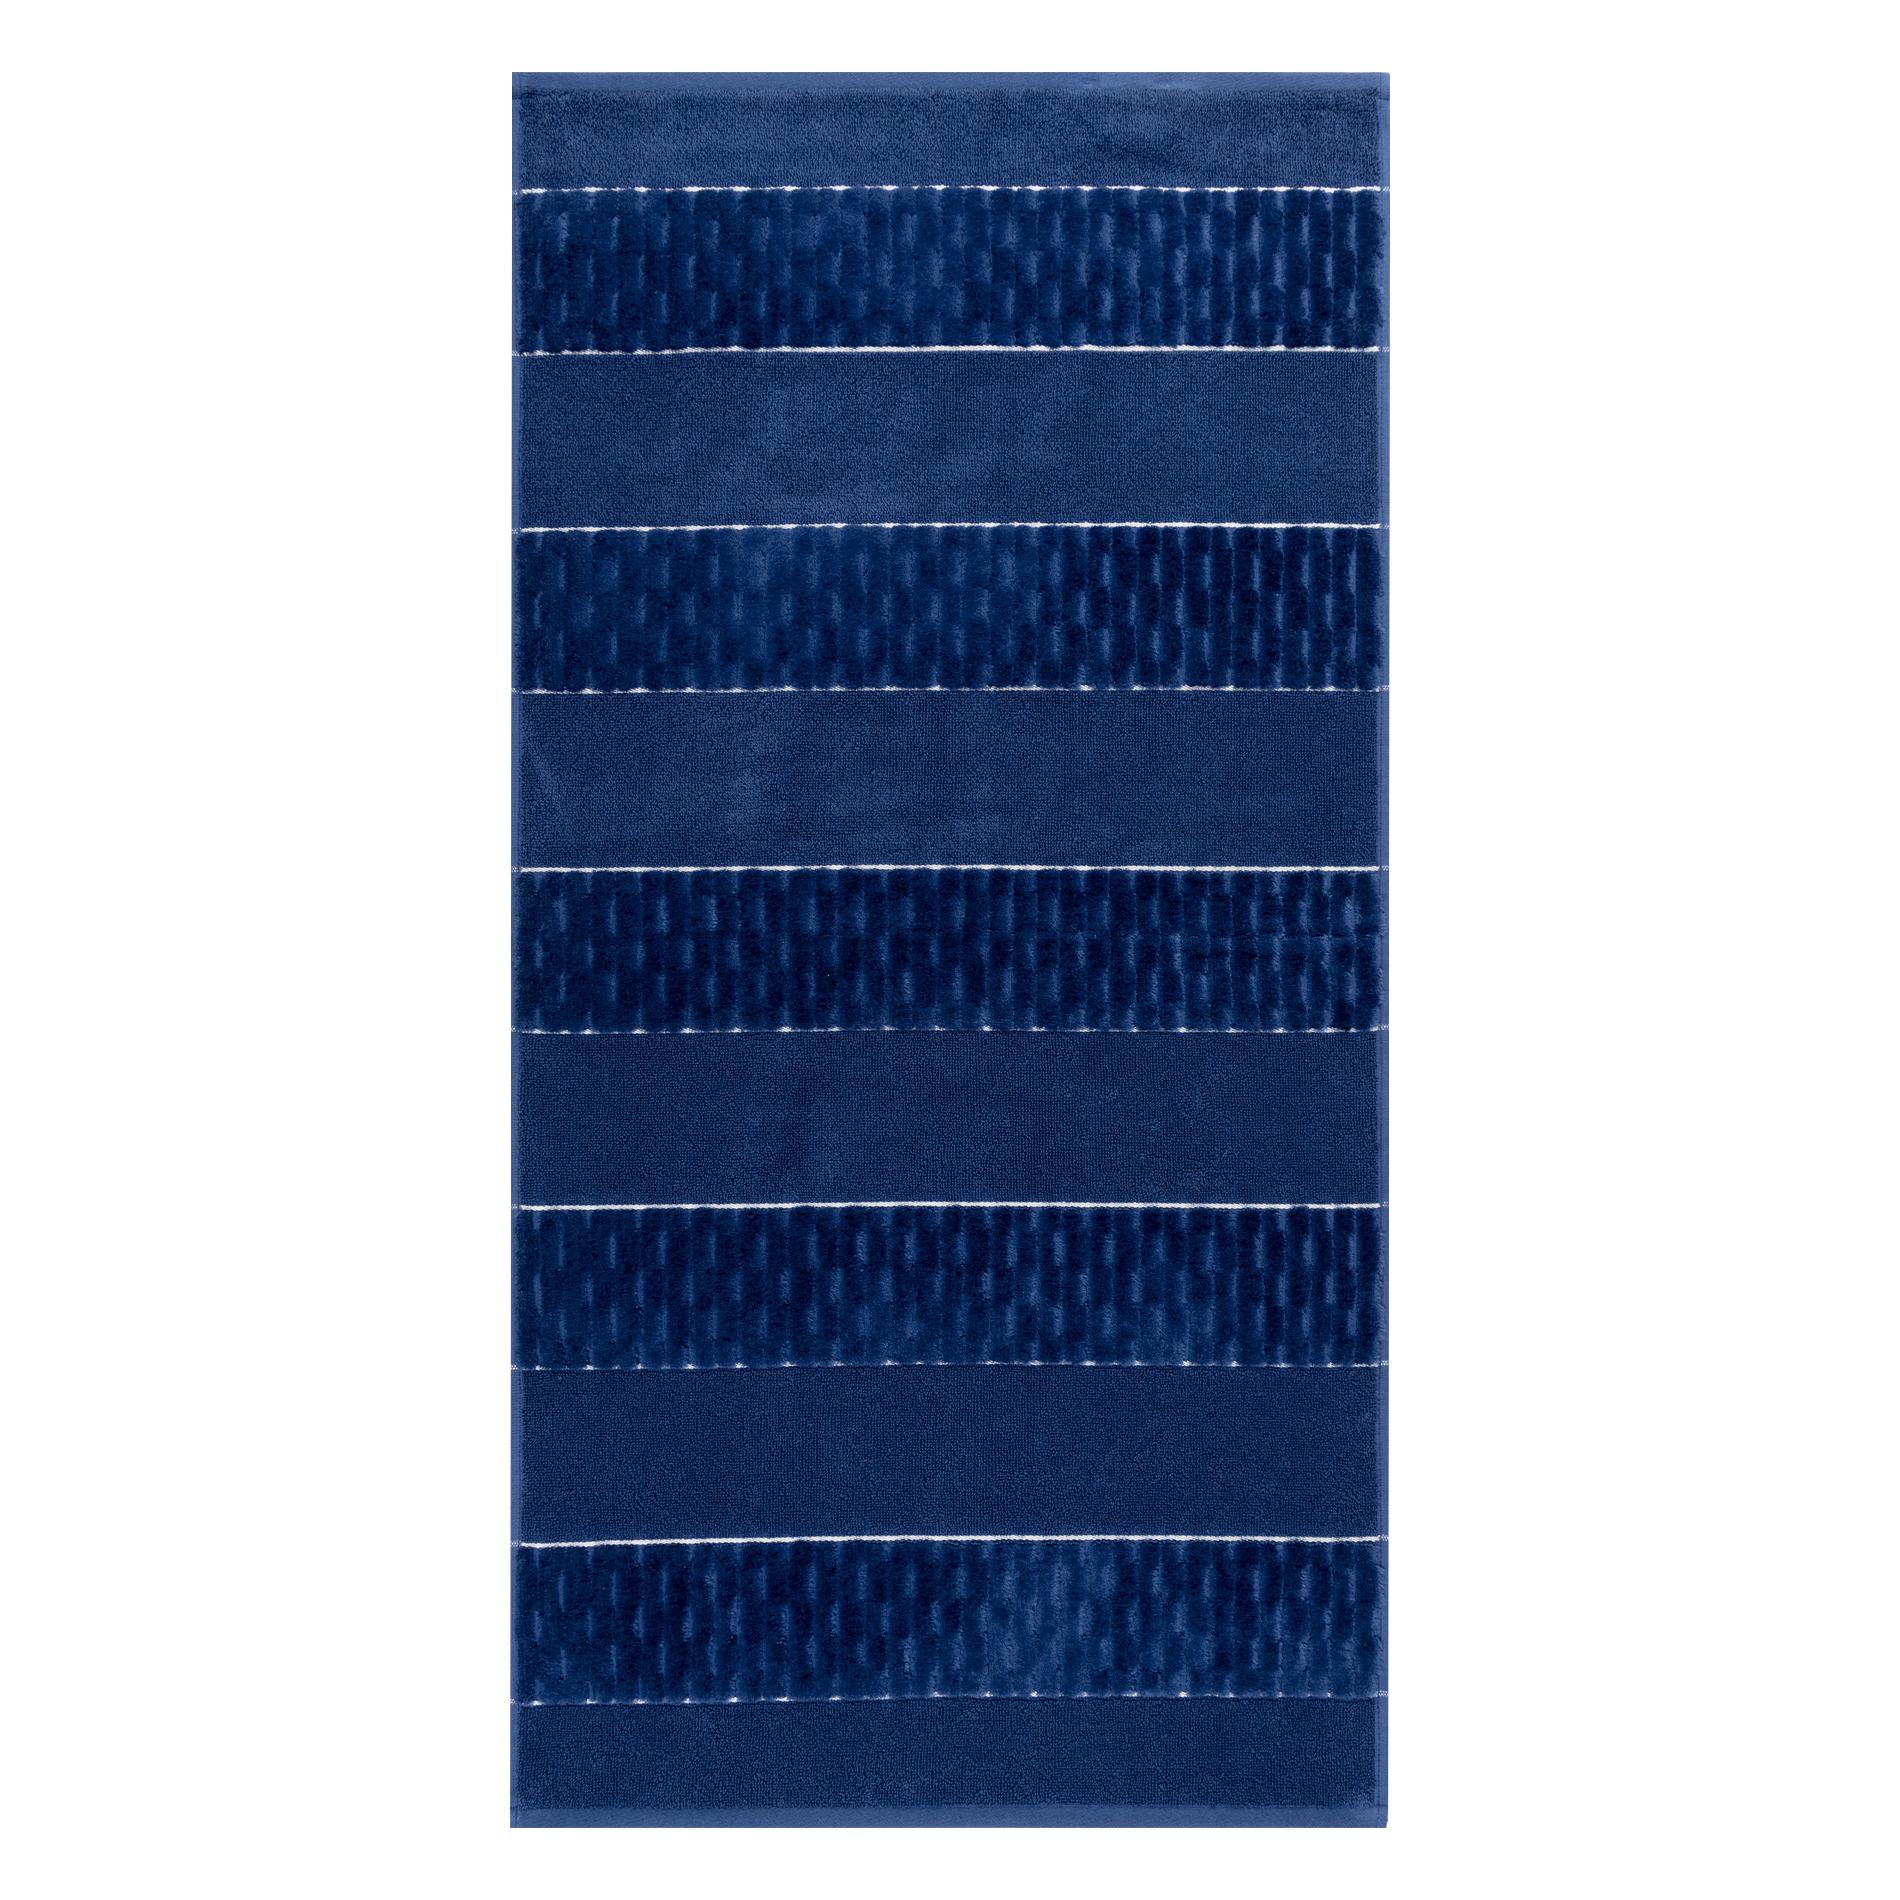 Махровое полотенце Cleanelly Esteta синее 50х100 см полотенце классик темно синий р 50х90